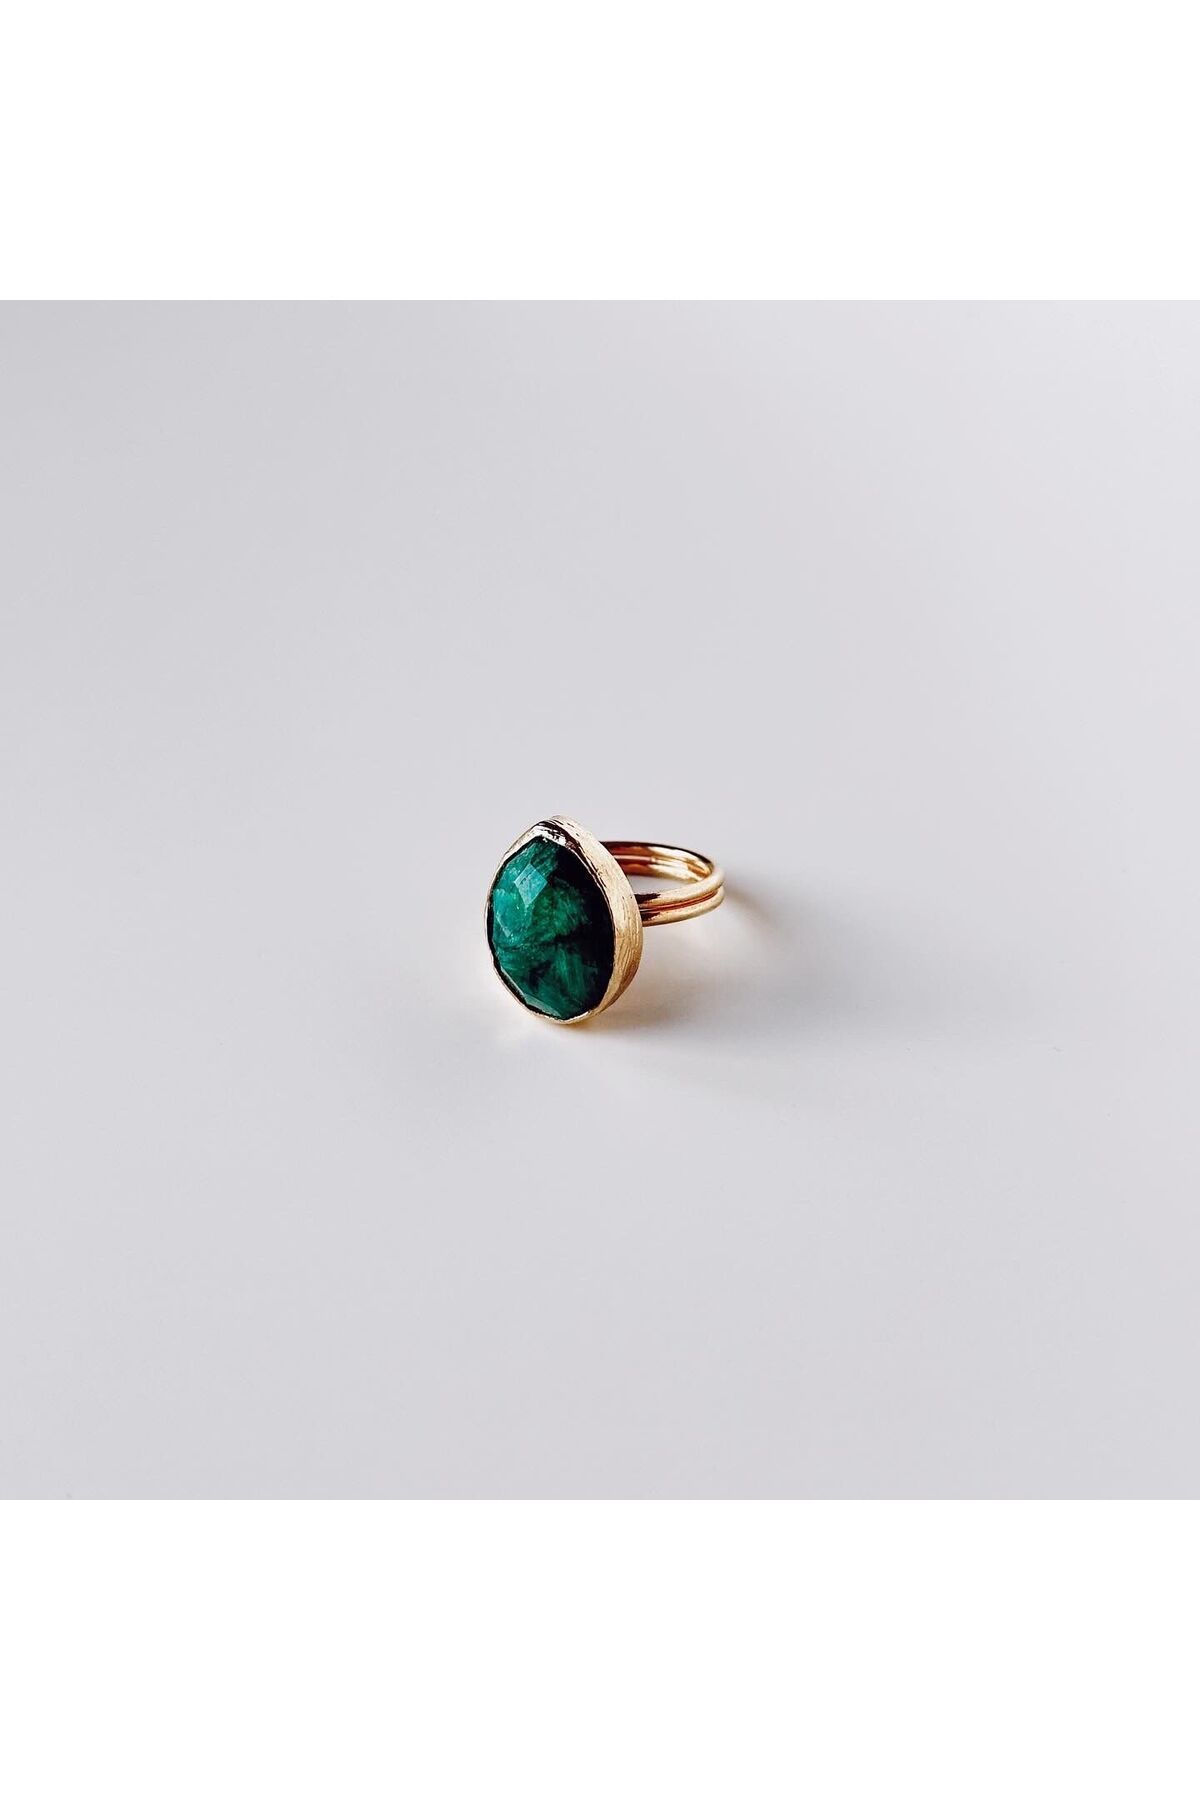 Boise Atelier Emerald Steel Ring / Çelik Yüzük